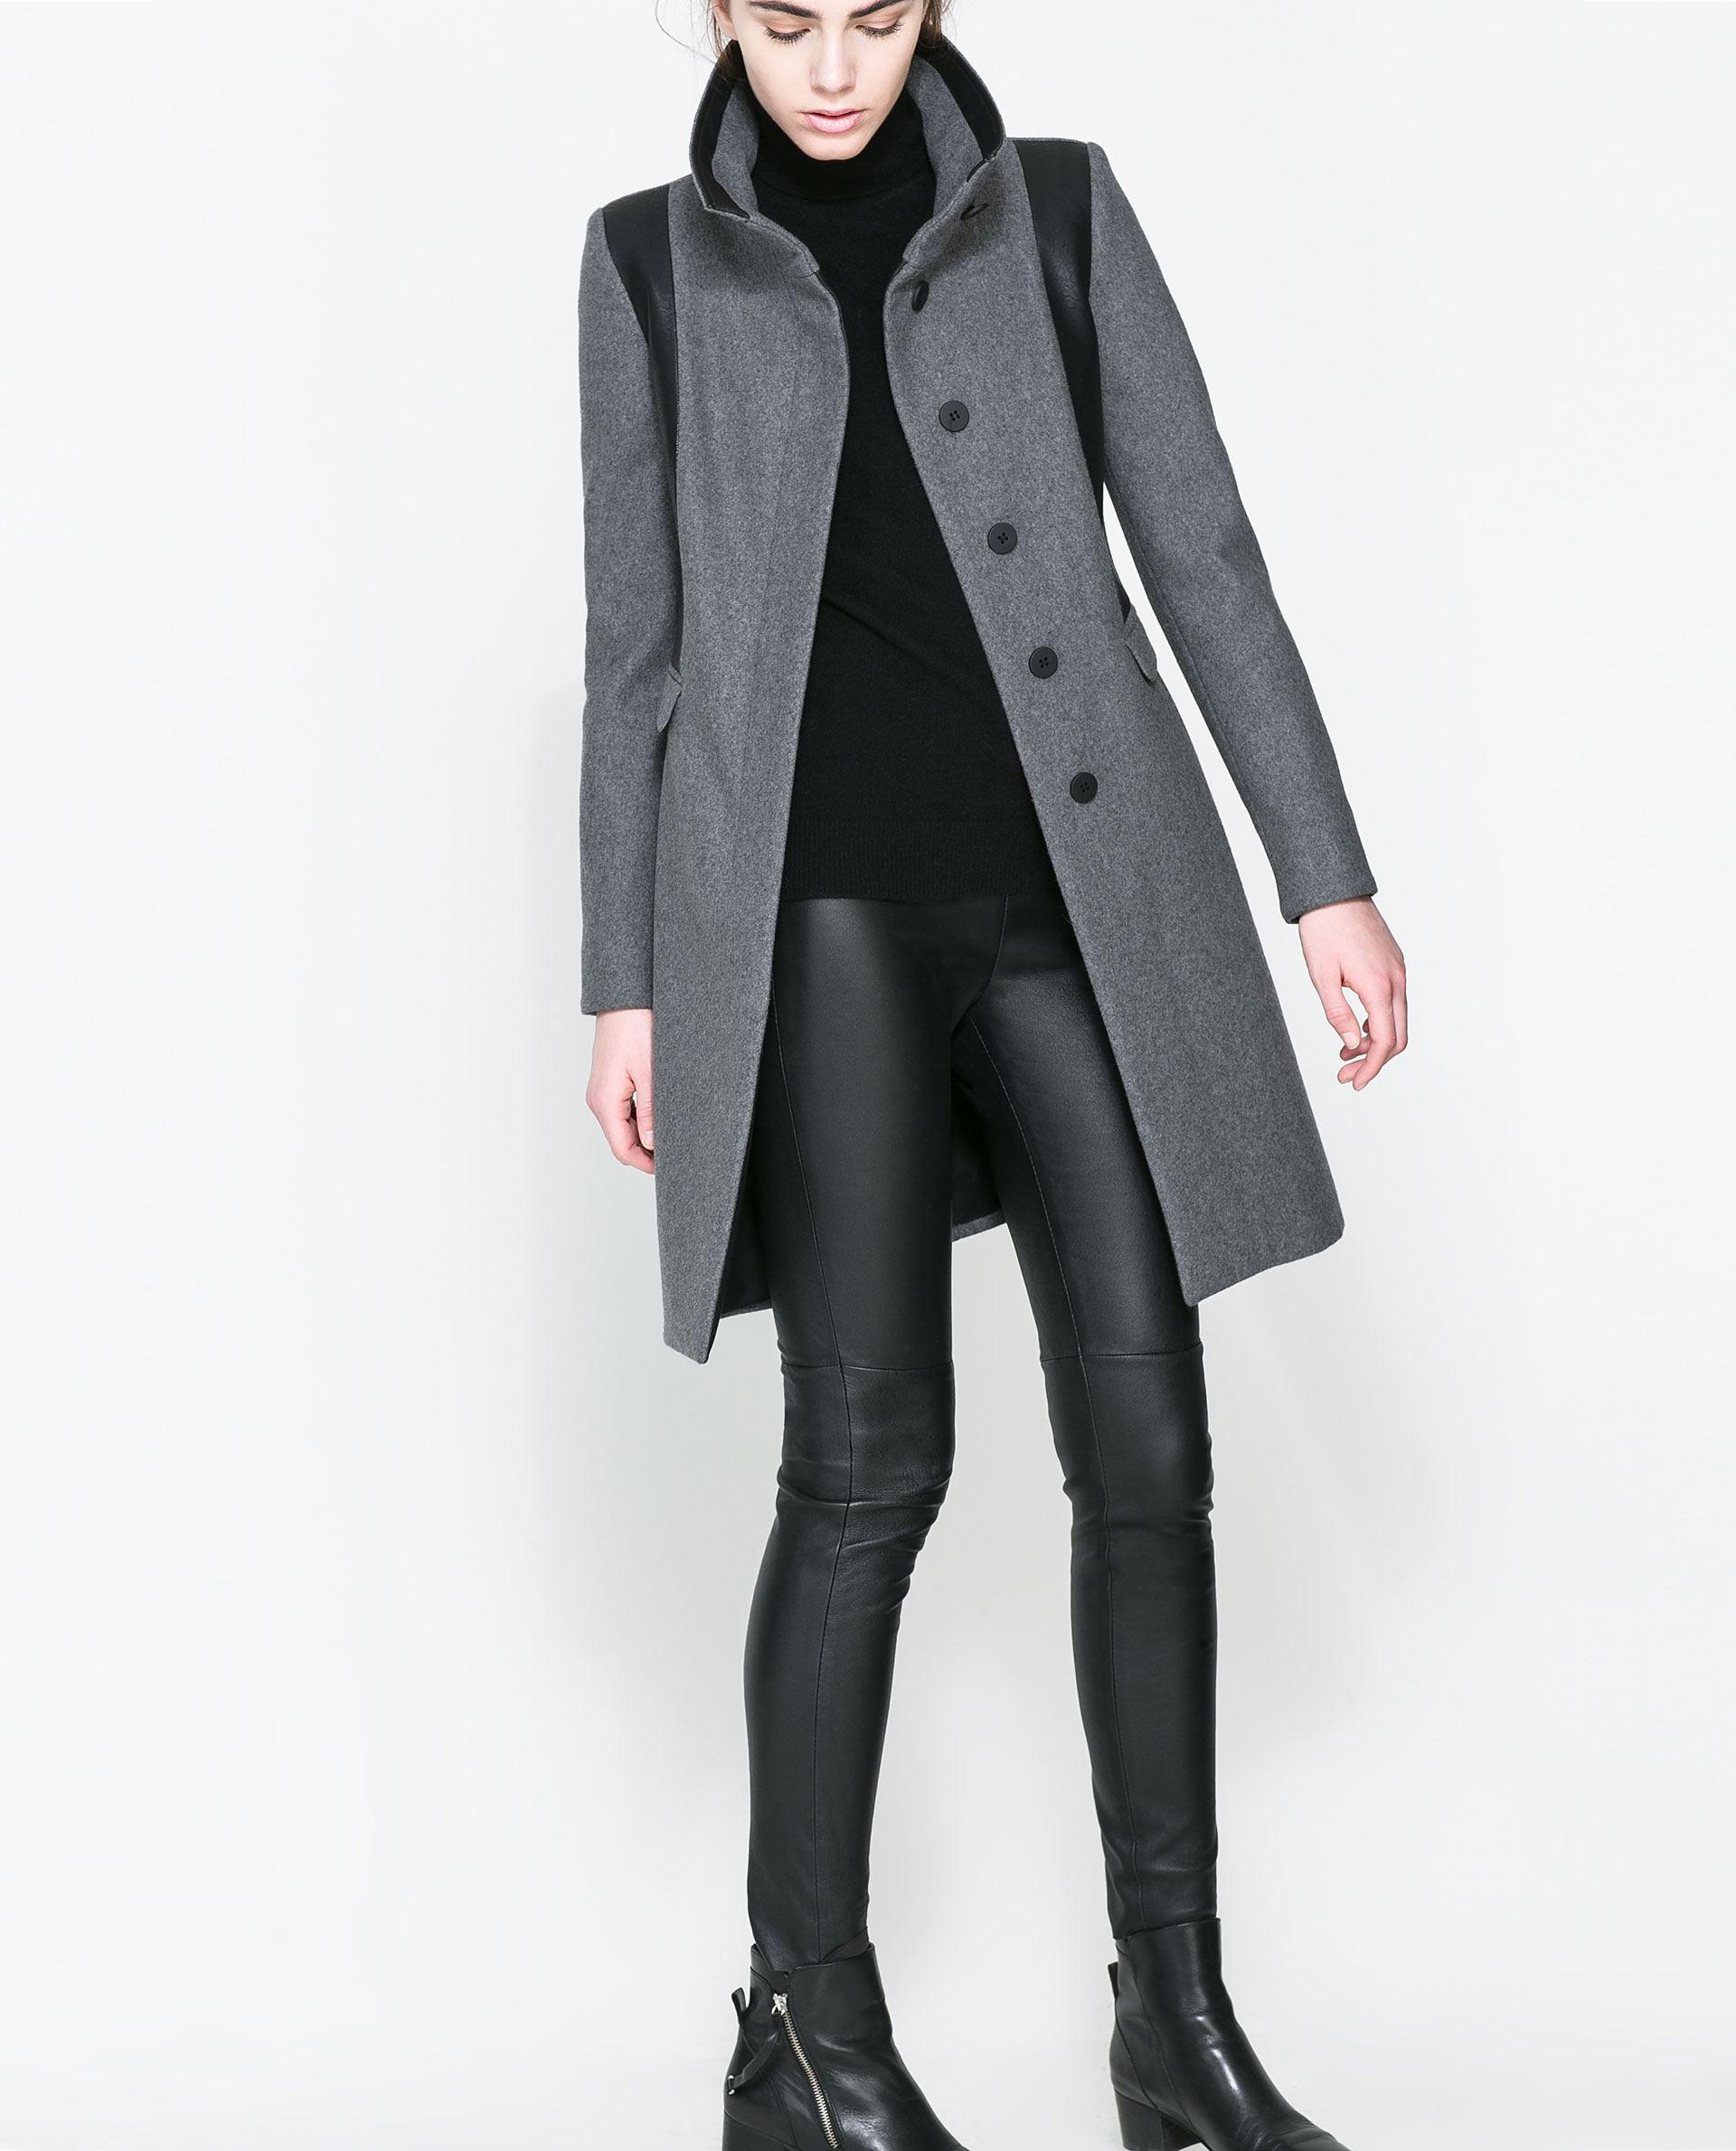 Zara Combined Wool Coat in Gray (Grey marl) | Lyst